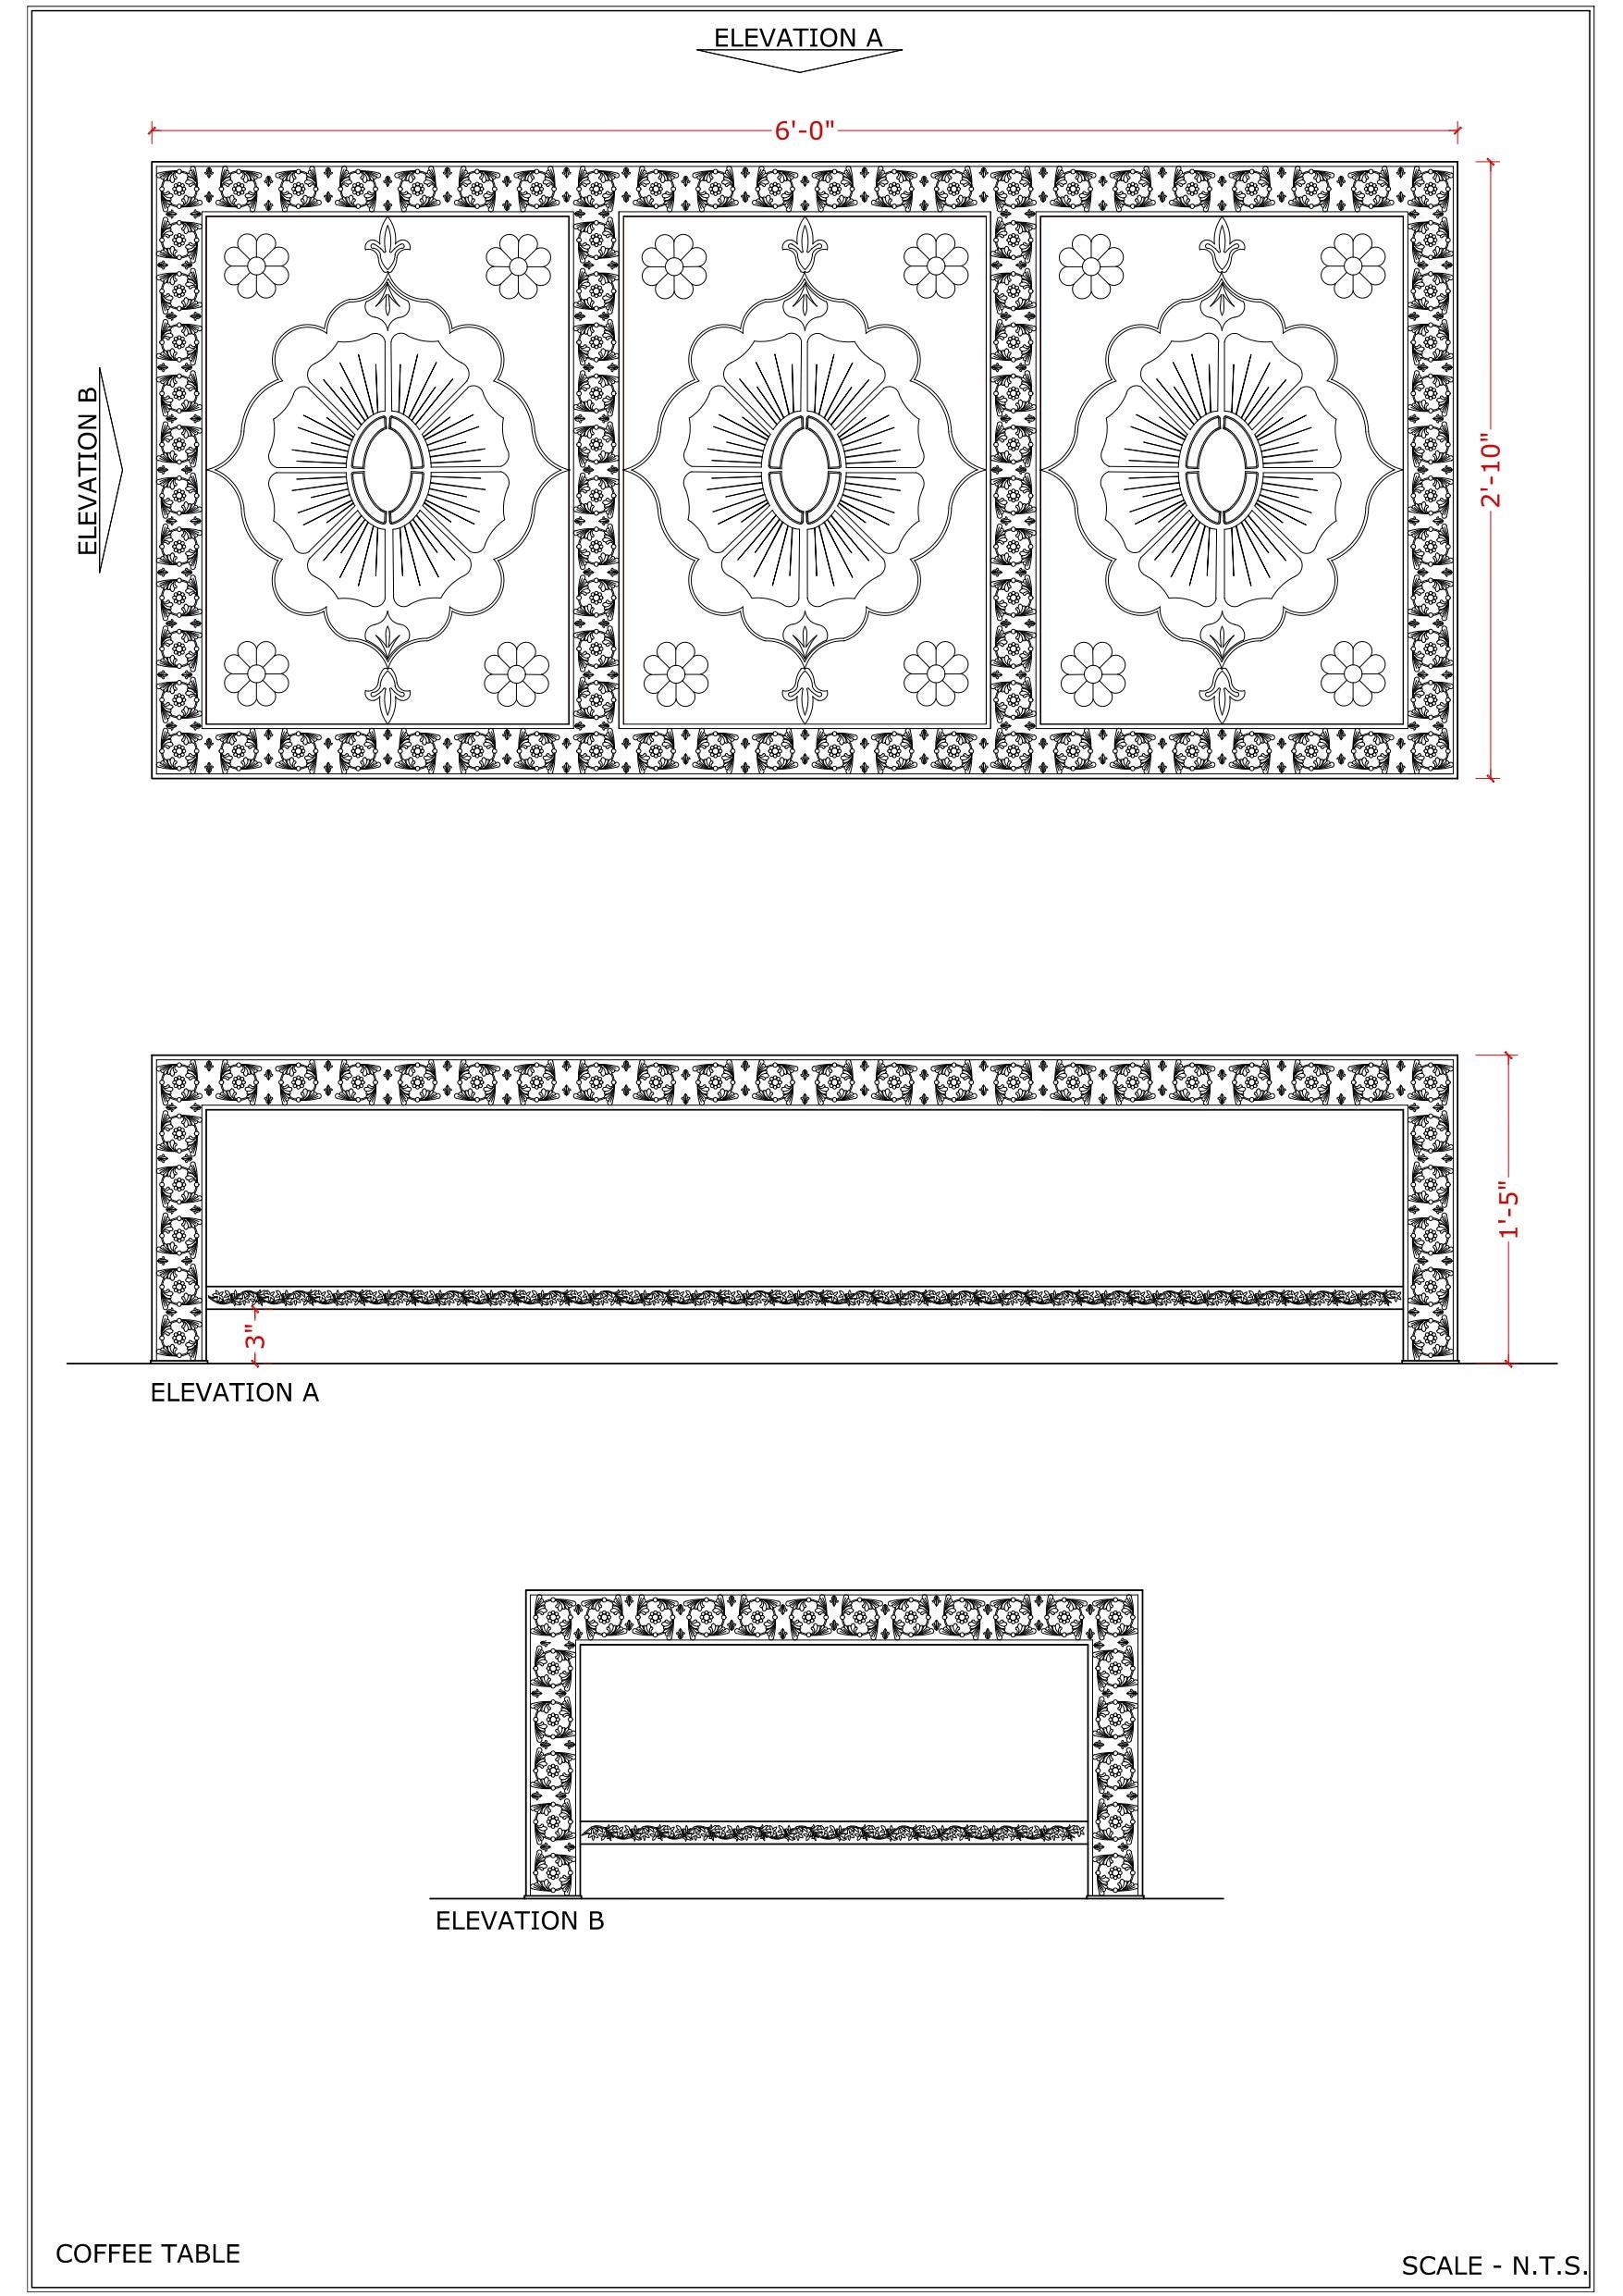 Dieser wunderschöne handgefertigte Tisch begann mit einer inspirierenden Skizze eines Rajasthani-Lotusmotivs. Wir haben das Motiv dreimal auf der Oberseite wiederholt. 
Die Lotosblumen werden auf der Oberseite geätzt, nachdem das Metall plattiert